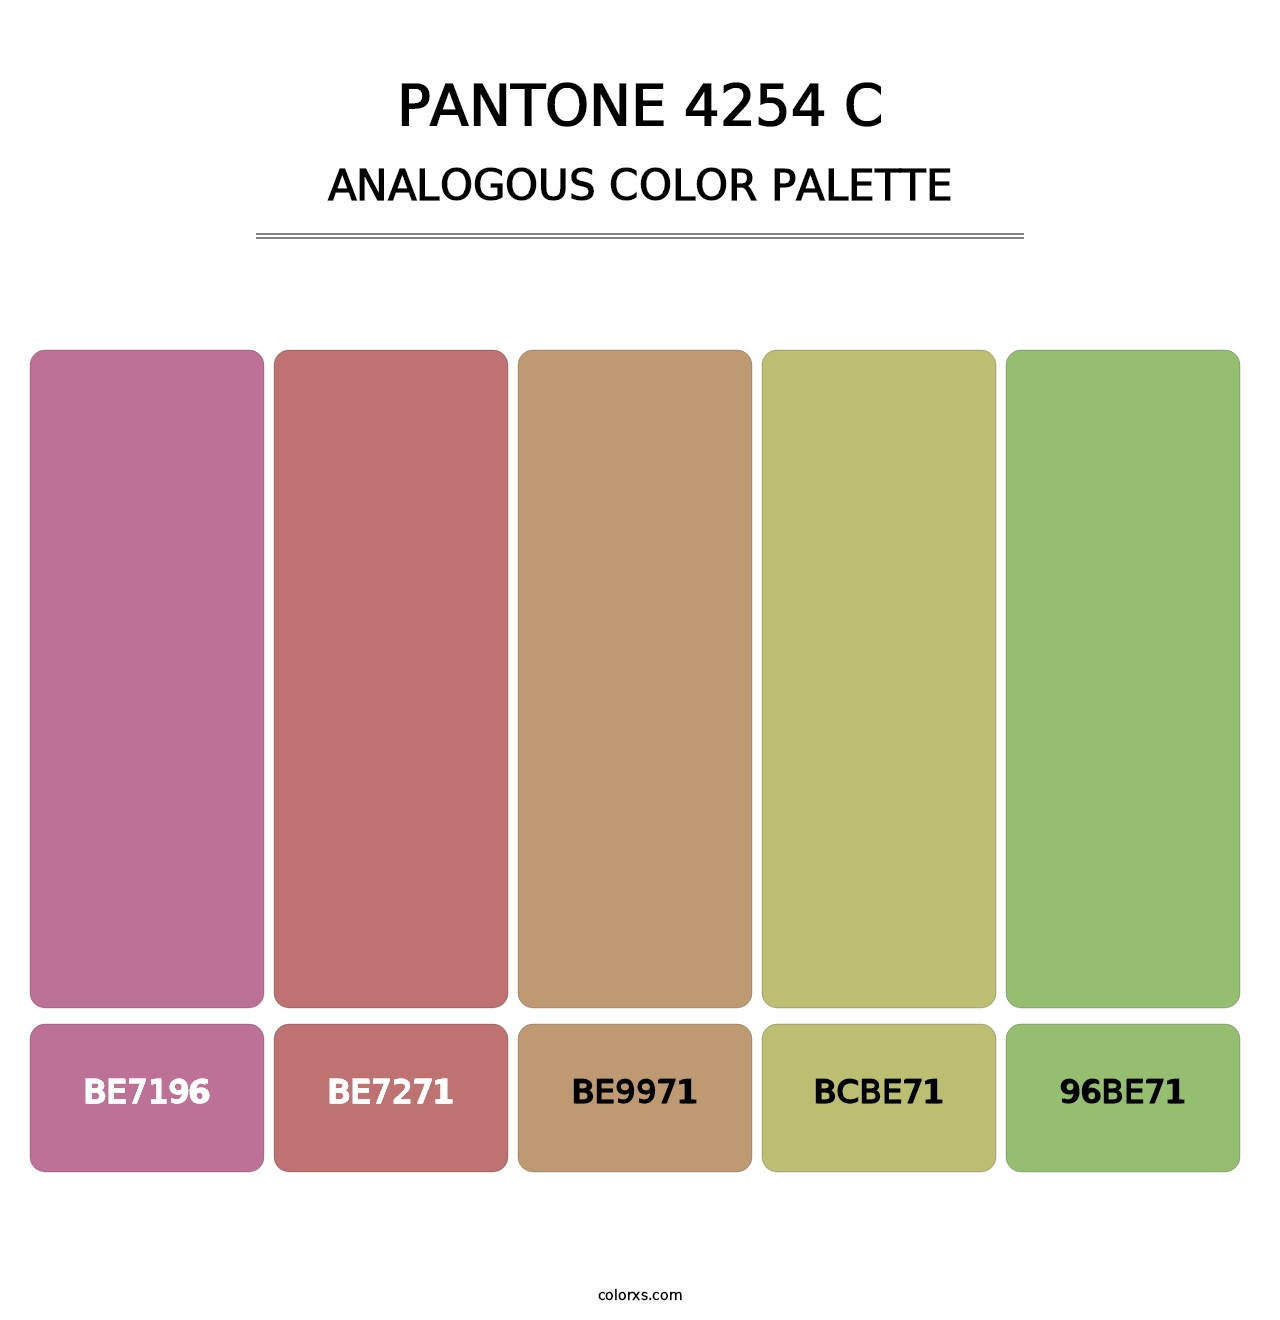 PANTONE 4254 C - Analogous Color Palette